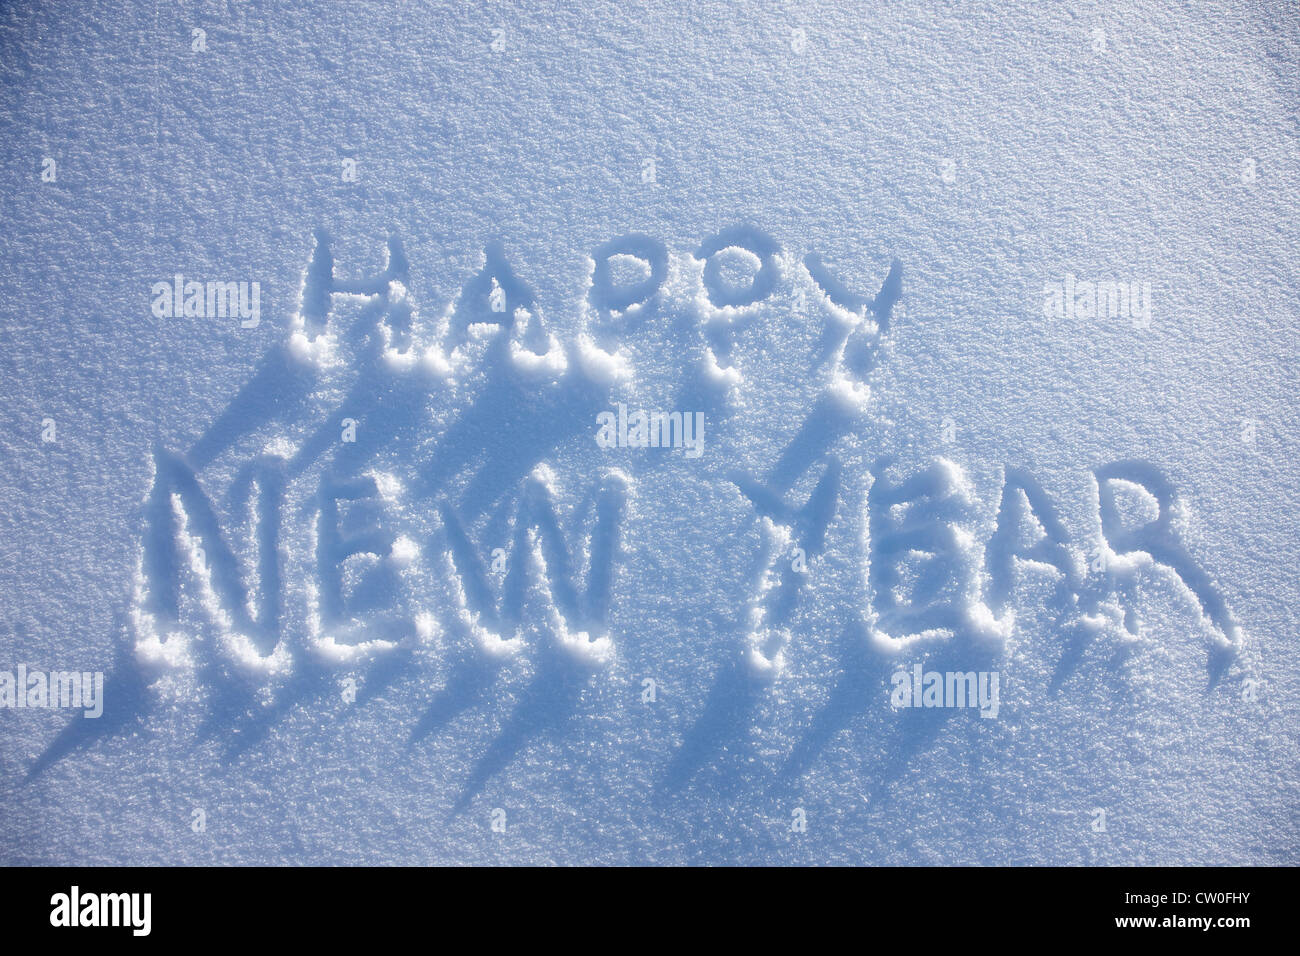 Feliz año nuevo escrito en la nieve Foto de stock